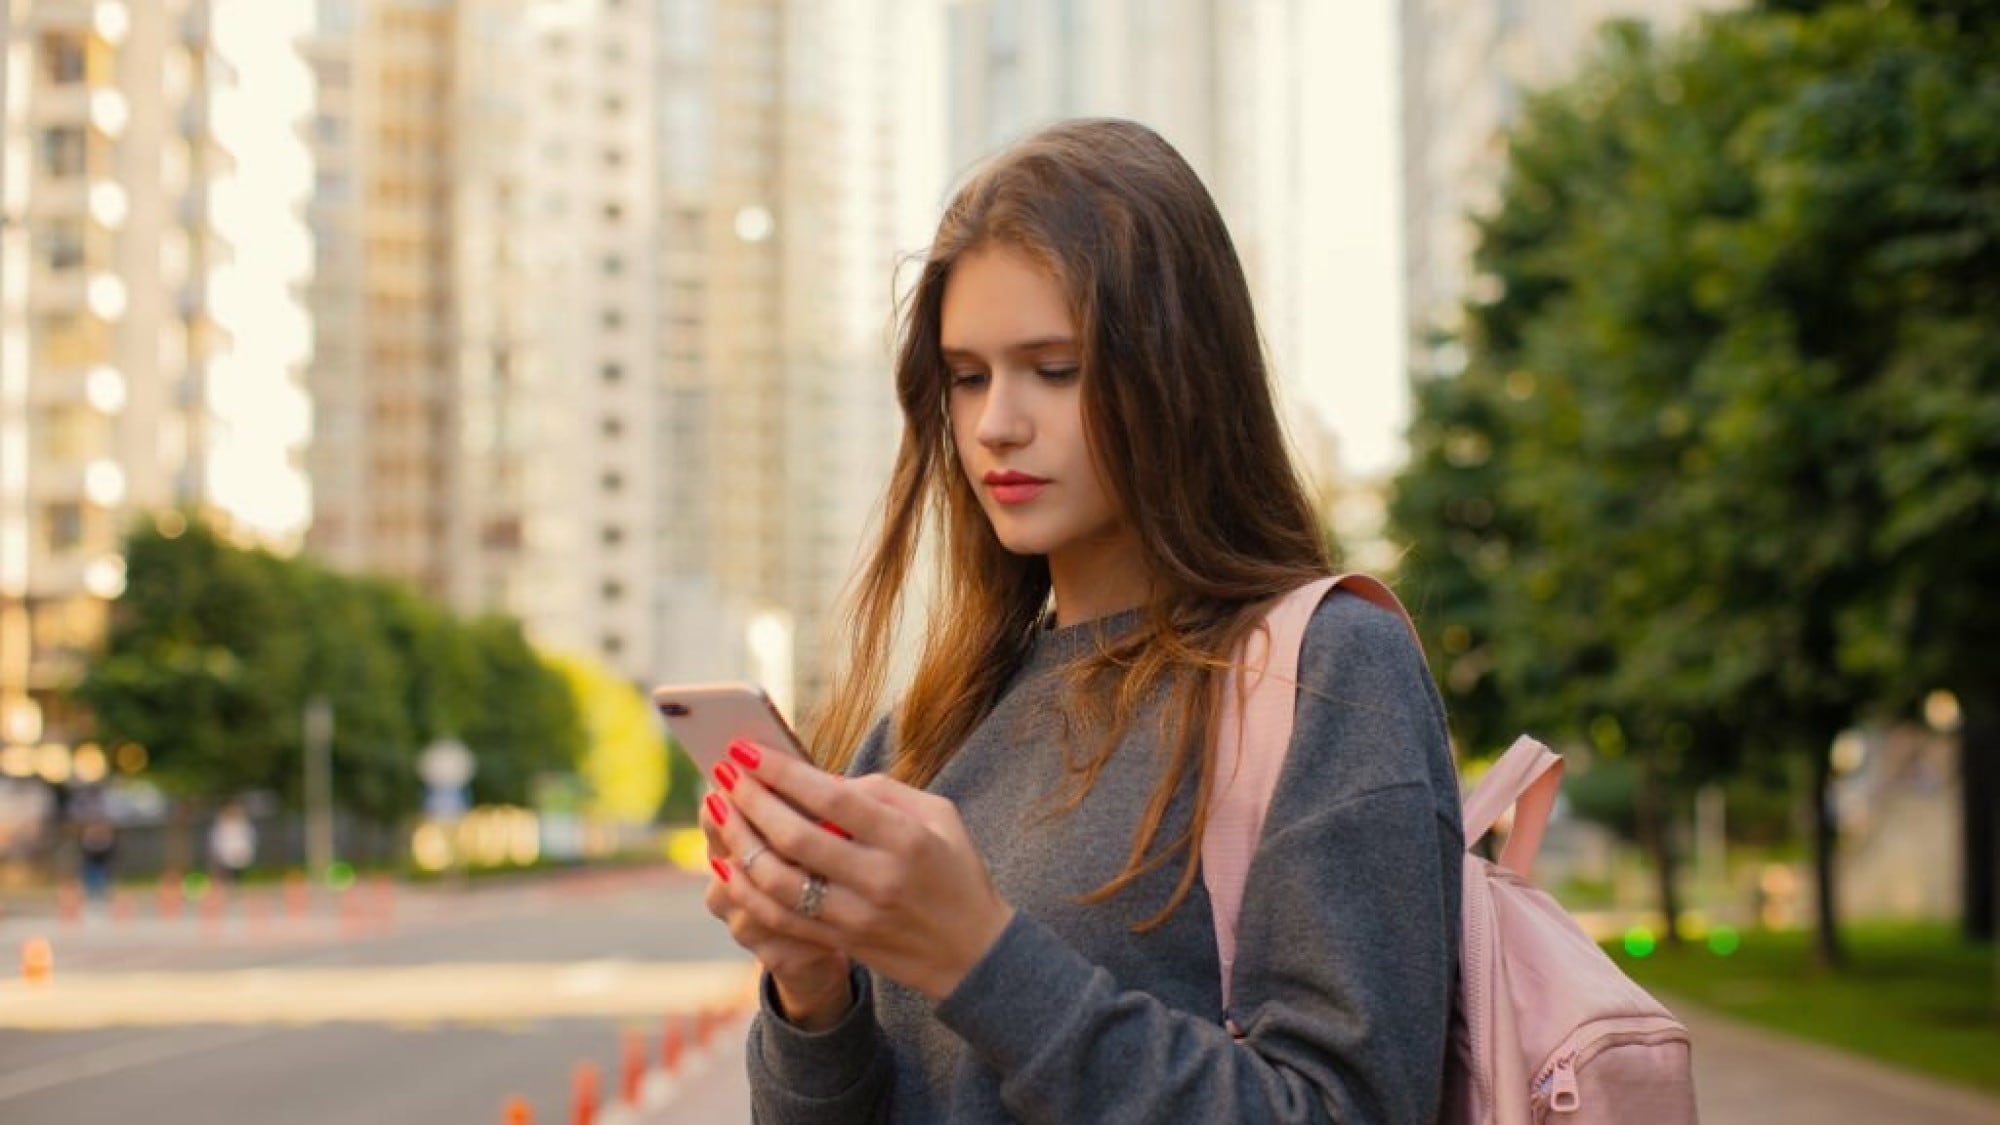 El iPhone sigue siendo el smartphone más popular entre adolescentes.